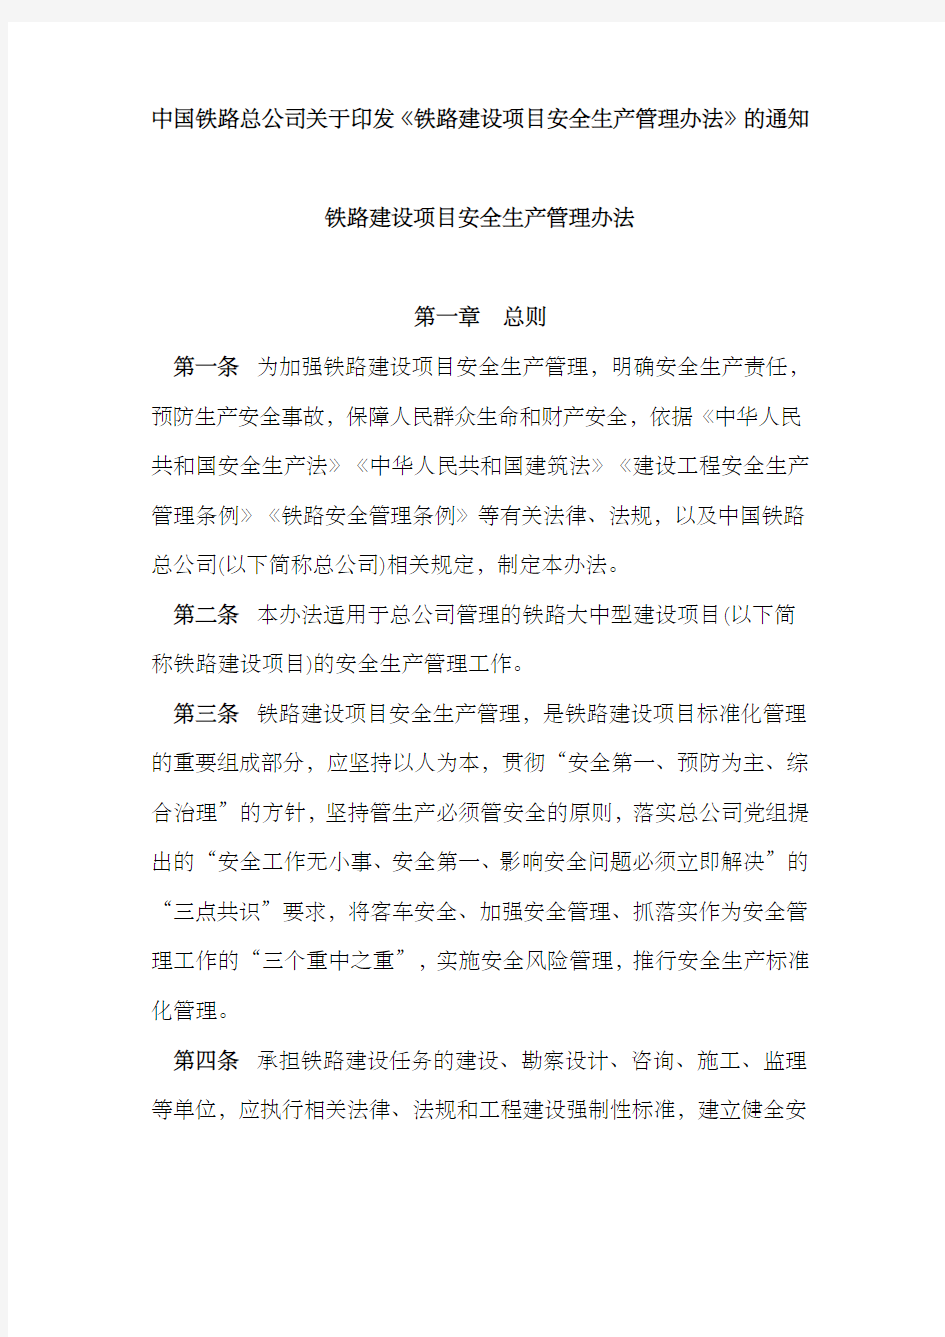 中国铁路总公司印发《铁路建设项目安全生产管理办法》的通知